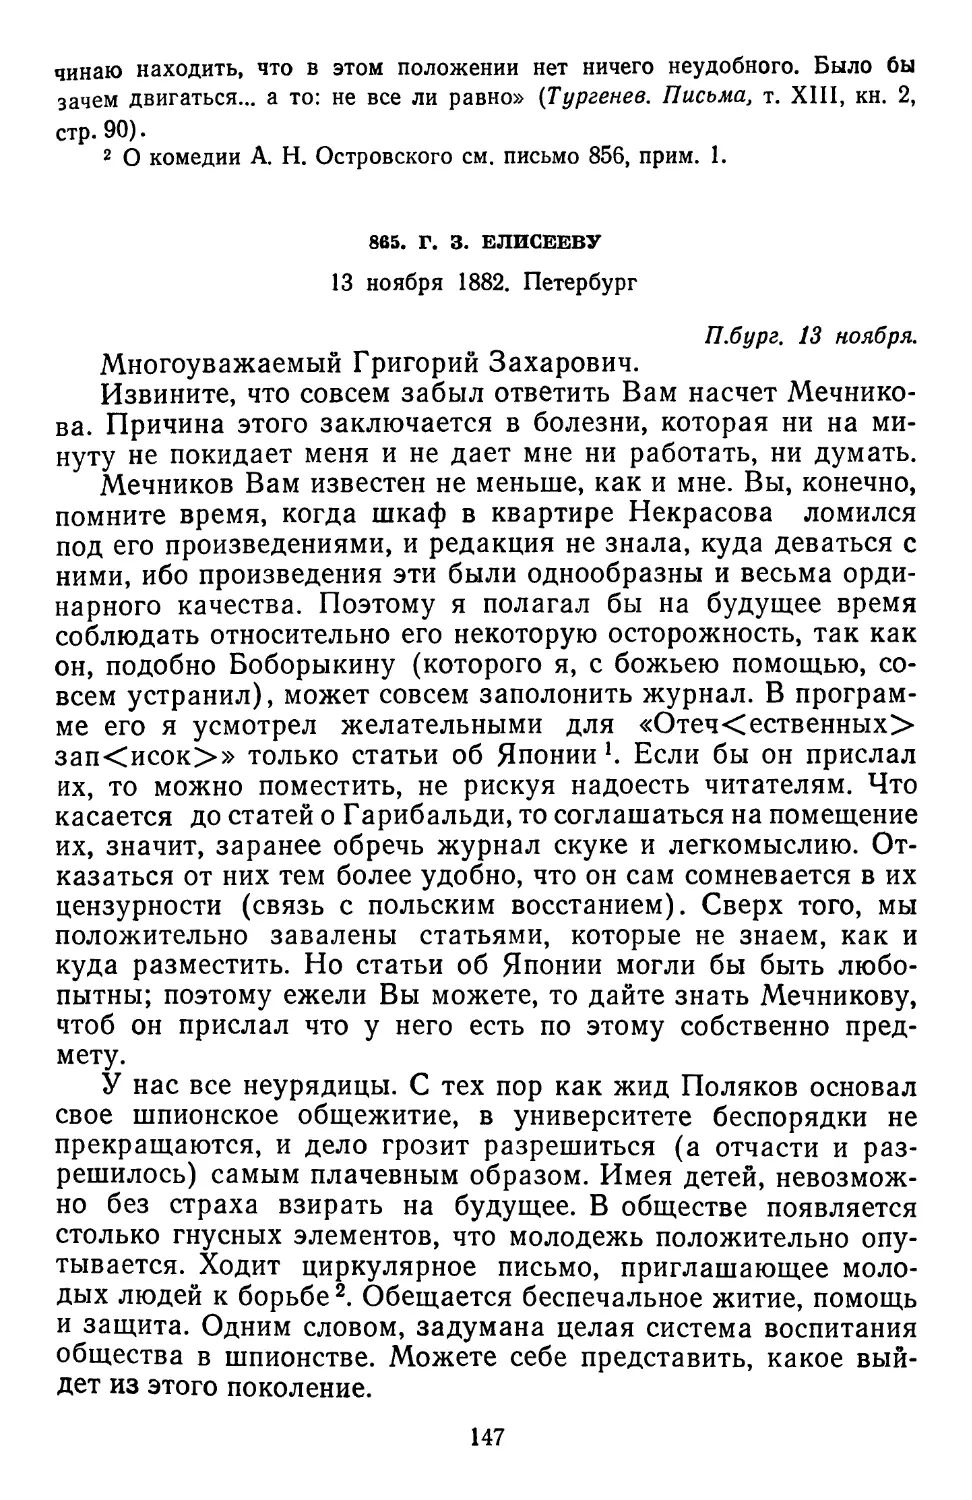 865.Г. 3. Елисееву 13 ноября 1882.Петербург...